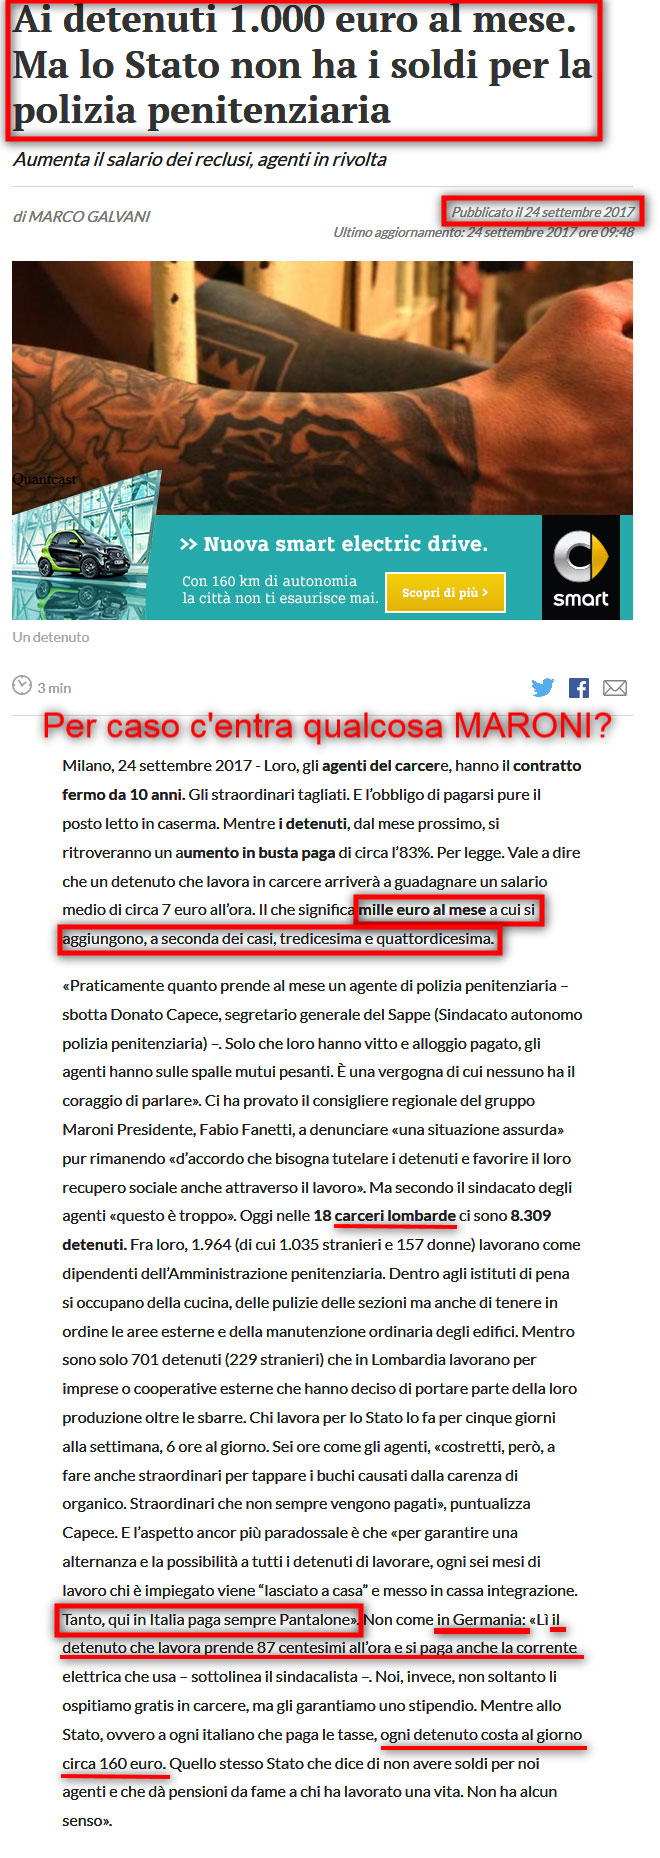 1.000 Euro ai carcerati più tredicesima e per i vecchi italiani di 65 anni non ci sono soldi neppure per meno di 500 Euro !!!